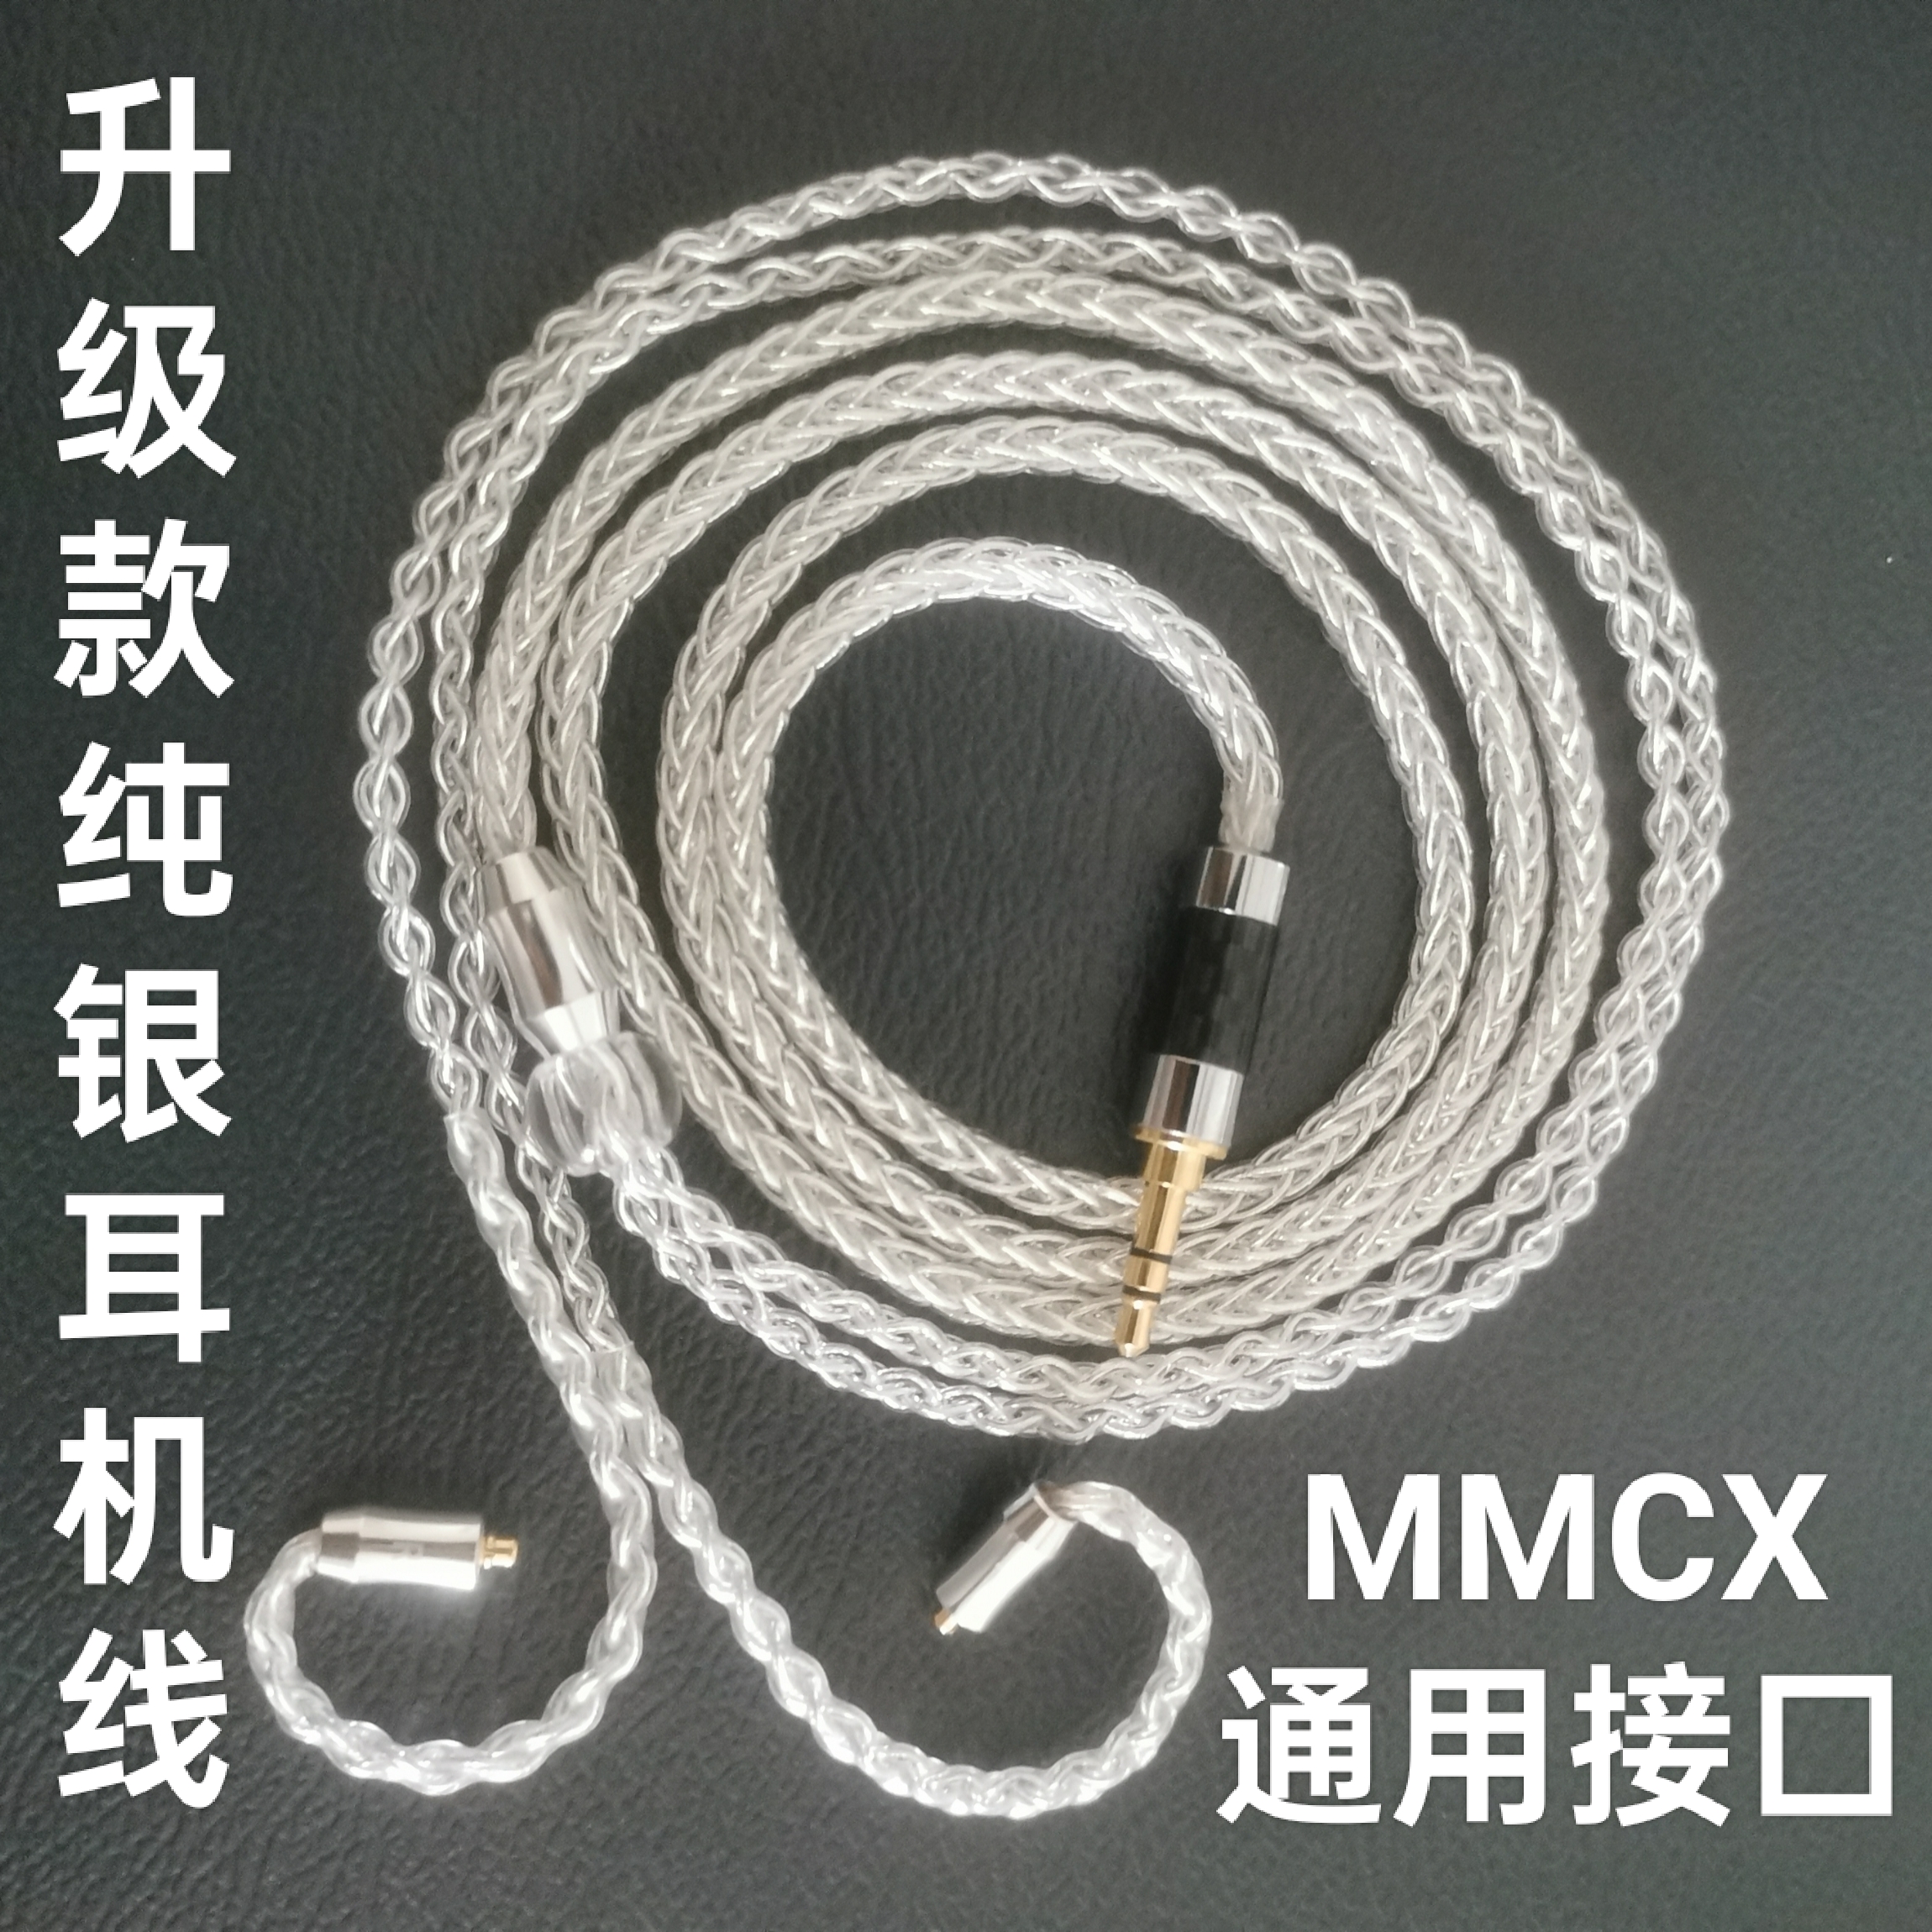 升级纯银耳机线苹果华为3.5插口通用型MMCX接口hifi耳机线